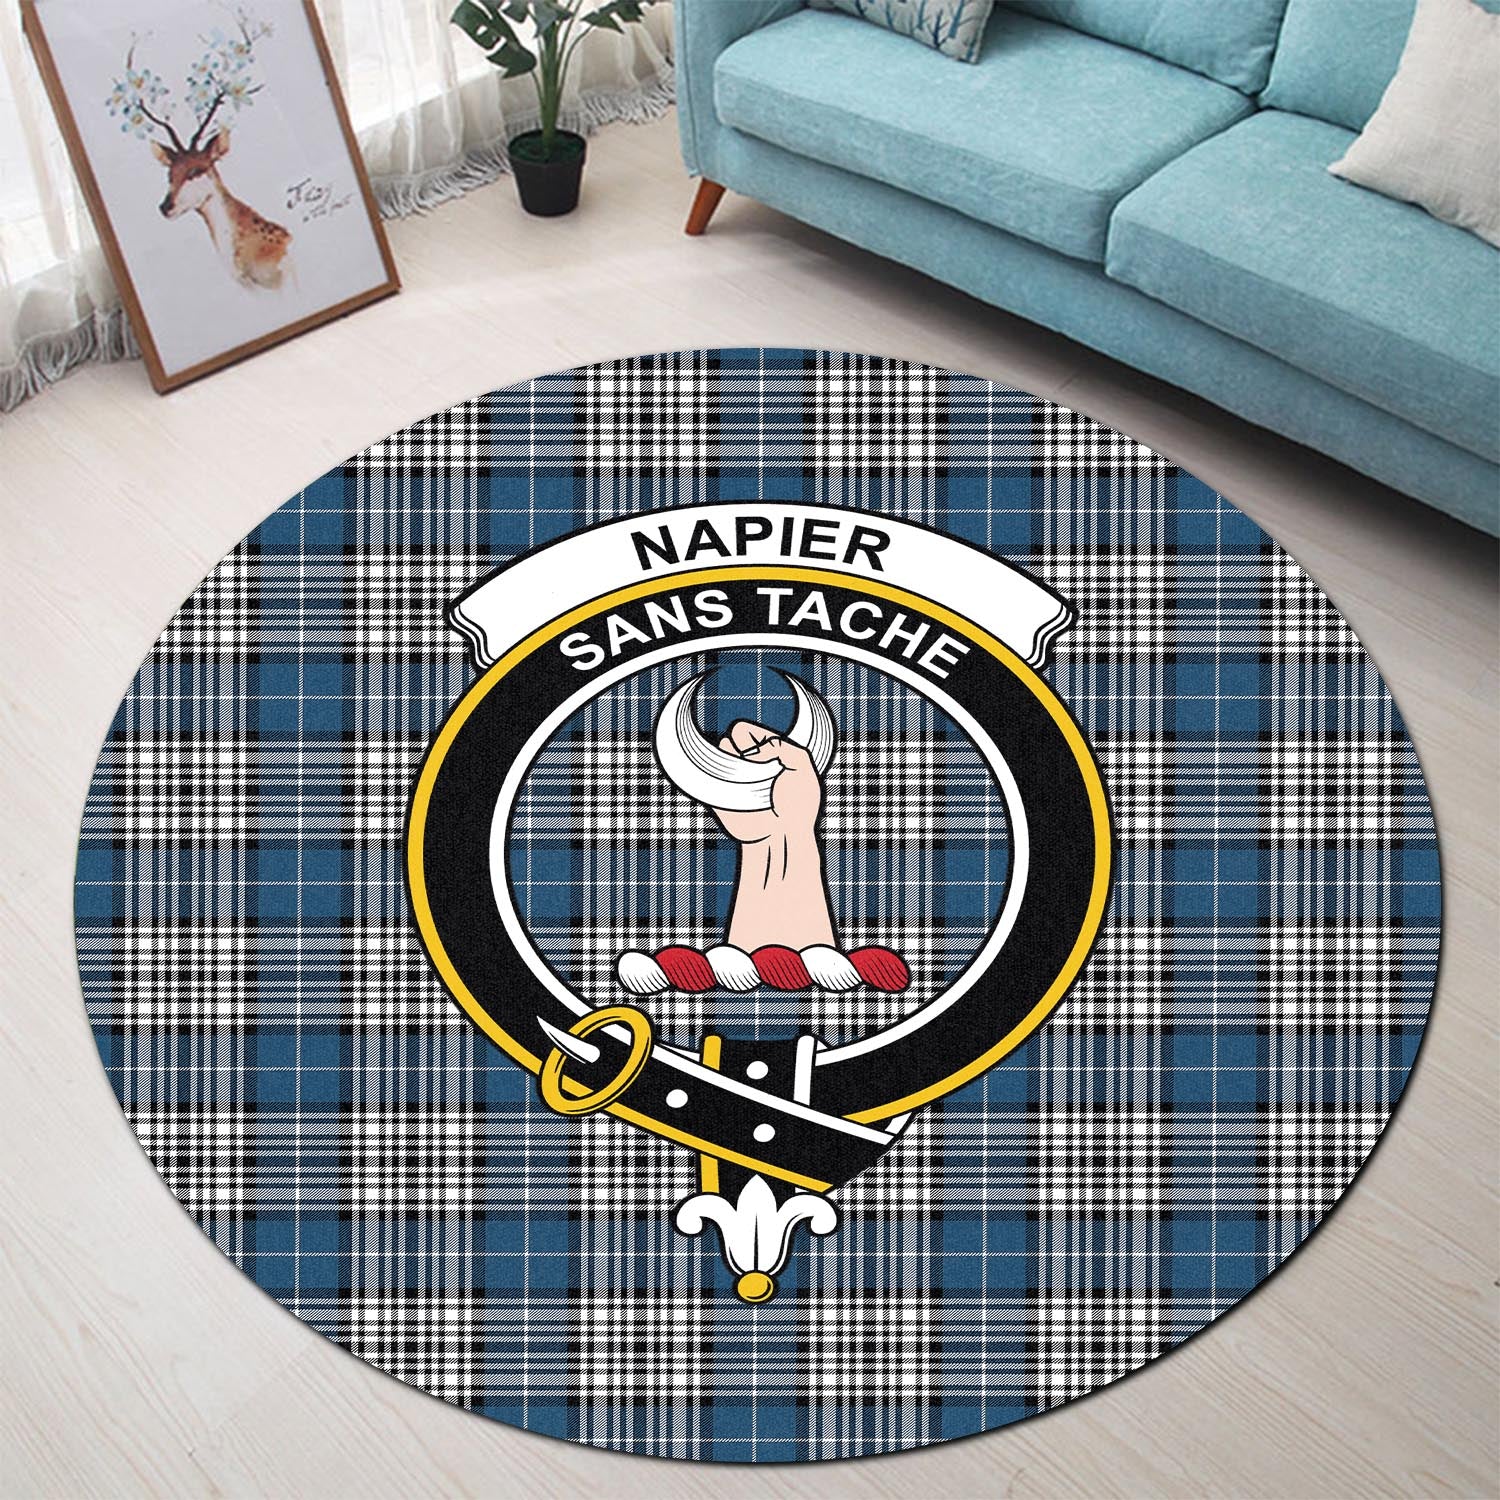 napier-modern-tartan-round-rug-with-family-crest